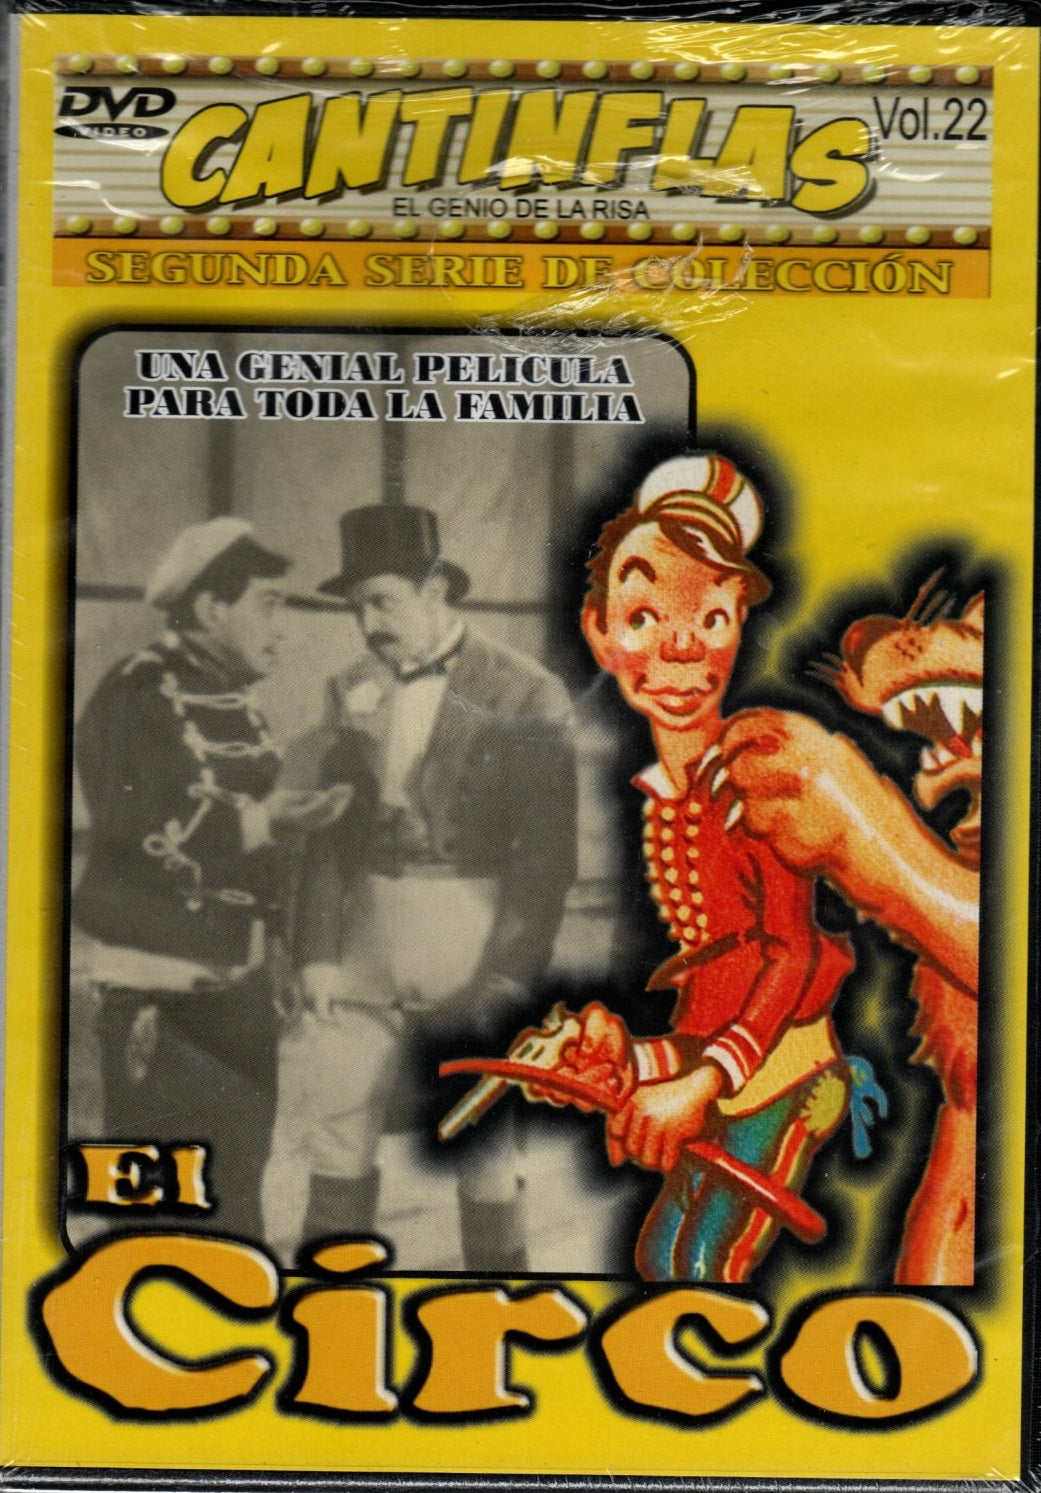 DVD Cantinflas - El circo Vol.22